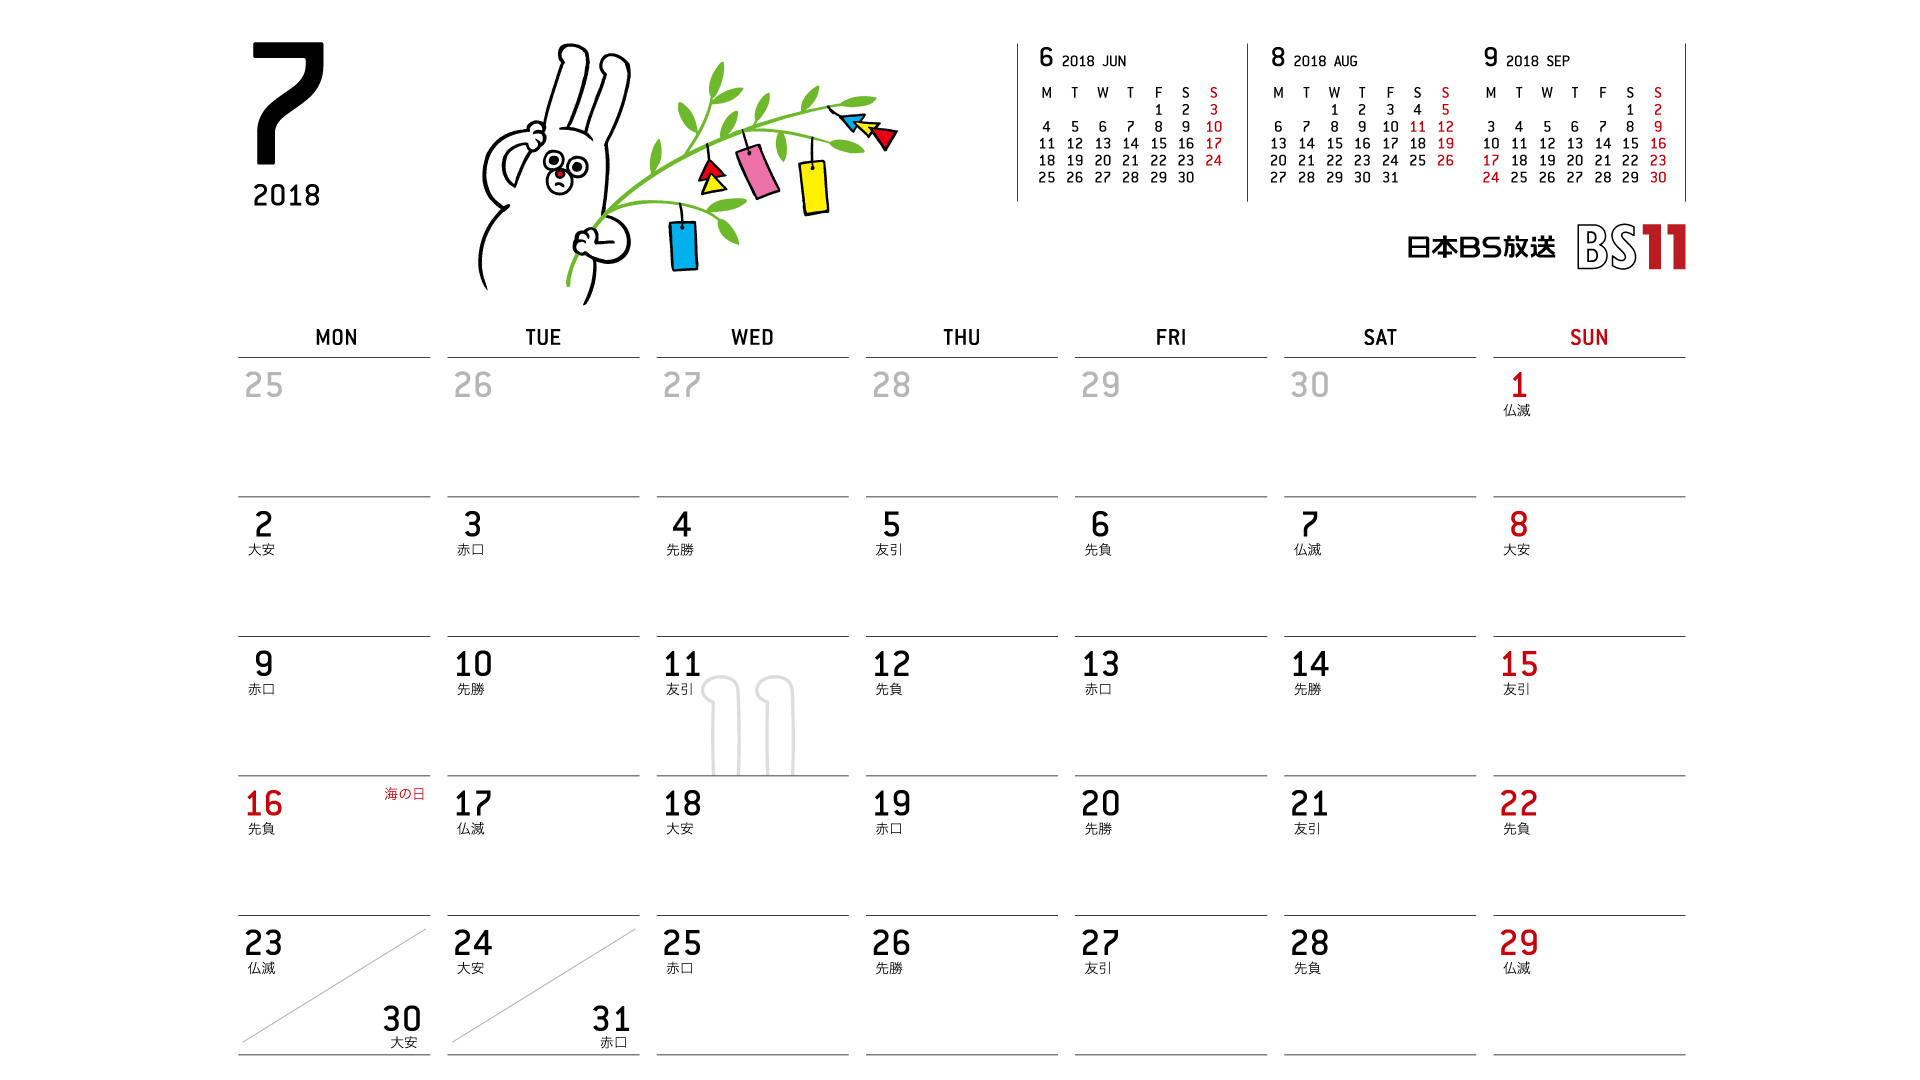 じゅういっちゃんのデジタルカレンダー18年07月 Bs11 イレブン いつでも無料放送